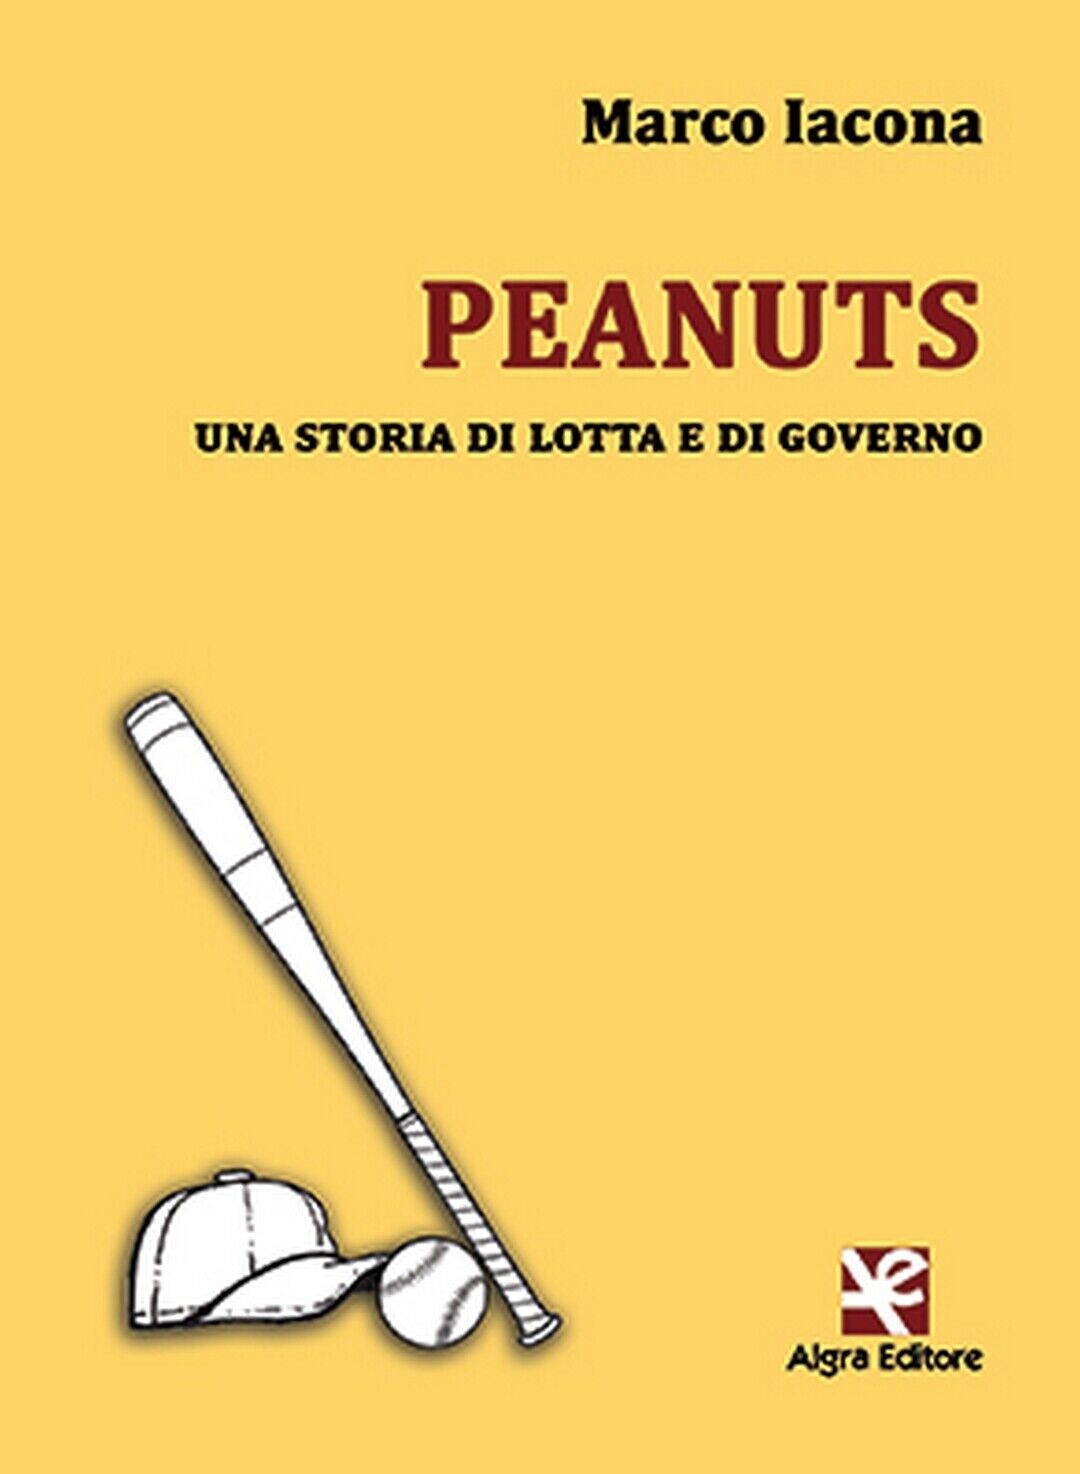 Peanuts. Una storia di lotta e di governo  di Marco Iacona,  Algra Editore